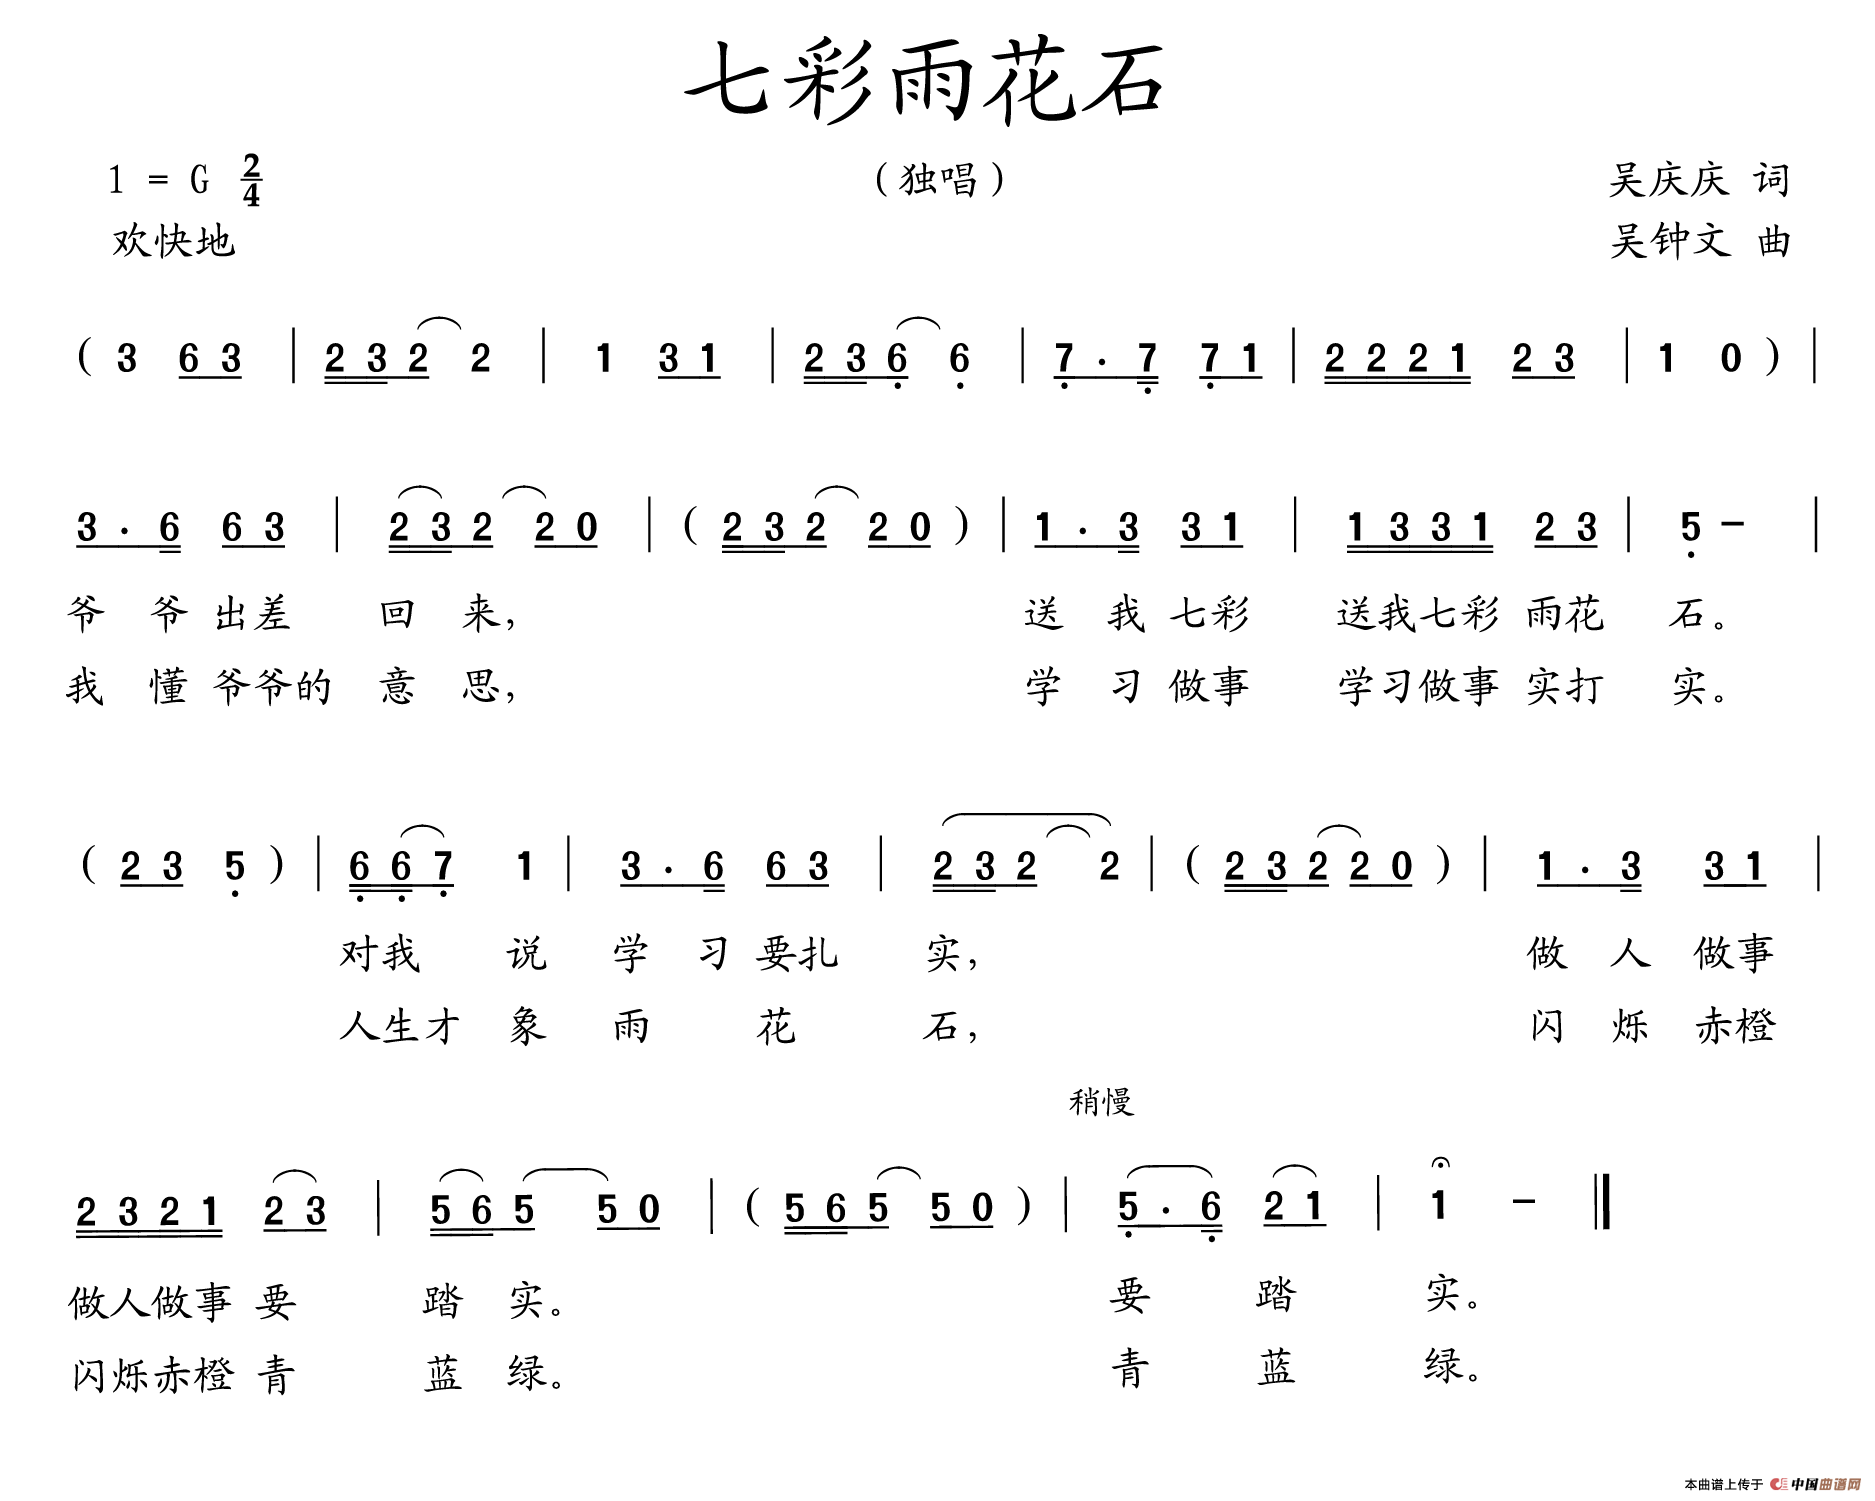 七彩雨花石(1)_11.gif